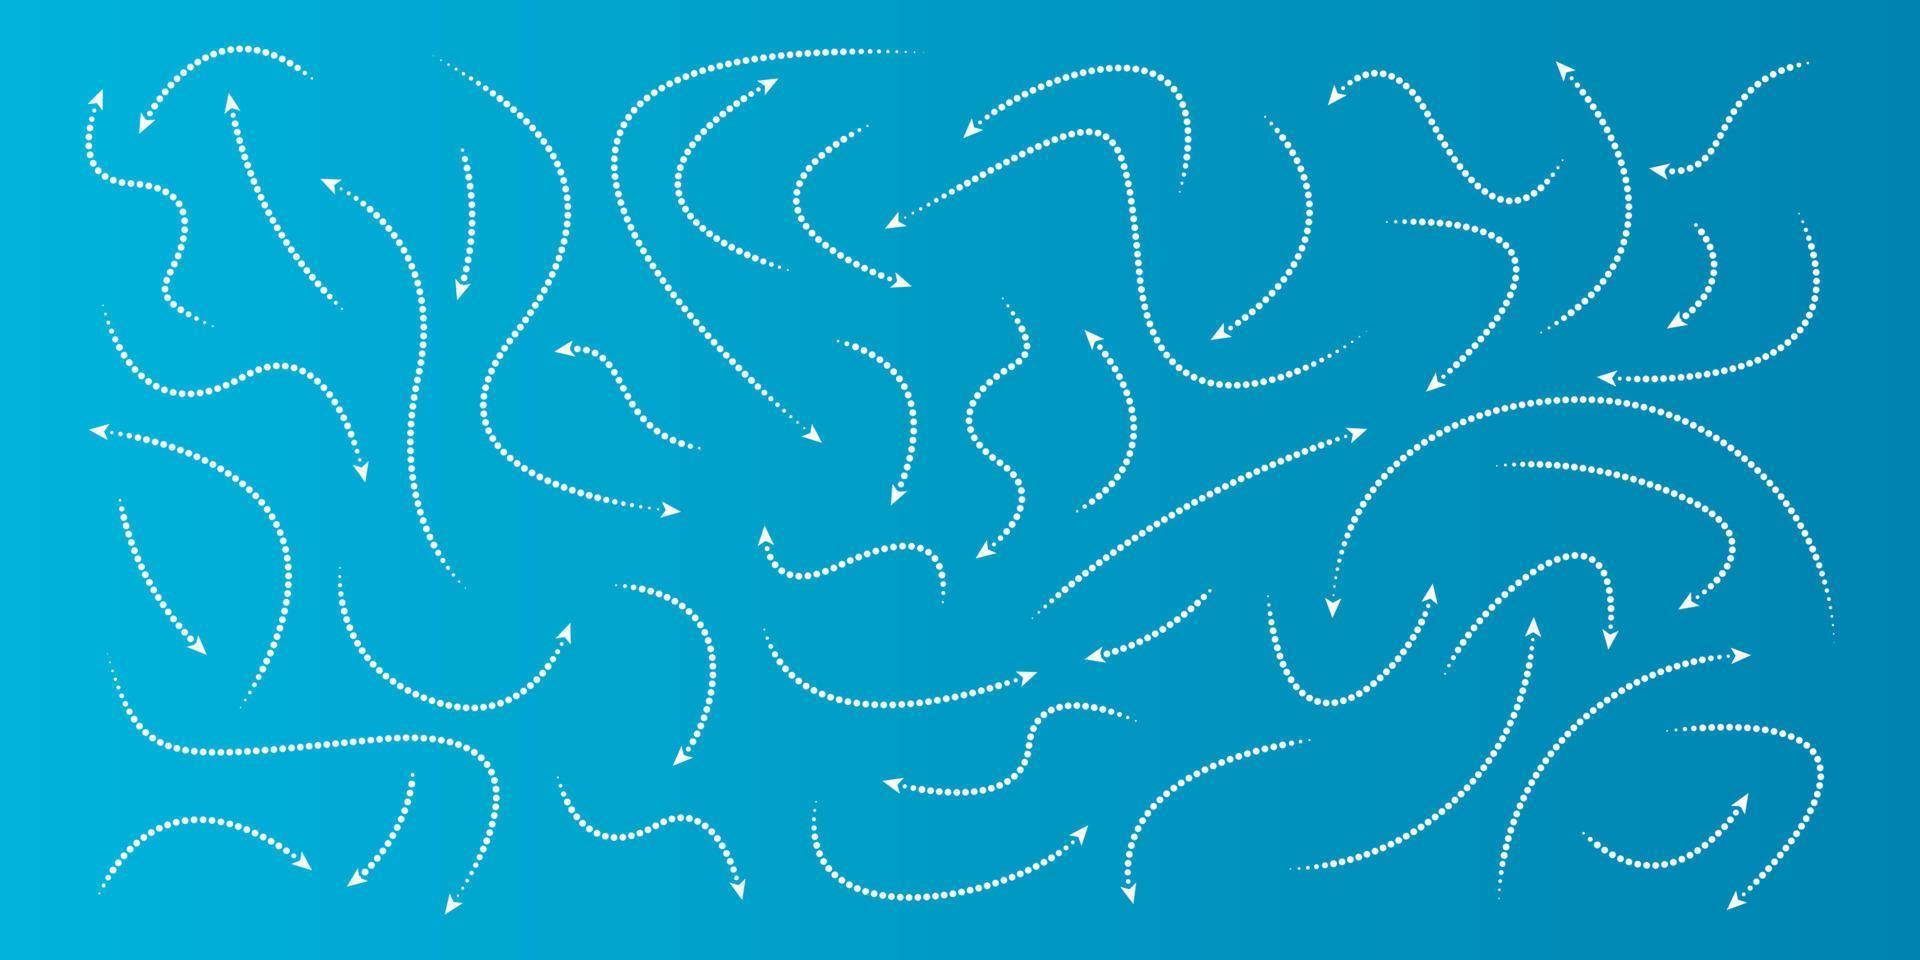 grande conjunto de setas desenhadas à mão pontilhada conjunto de setas direcionais isoladas de seta no estilo doodle vetor